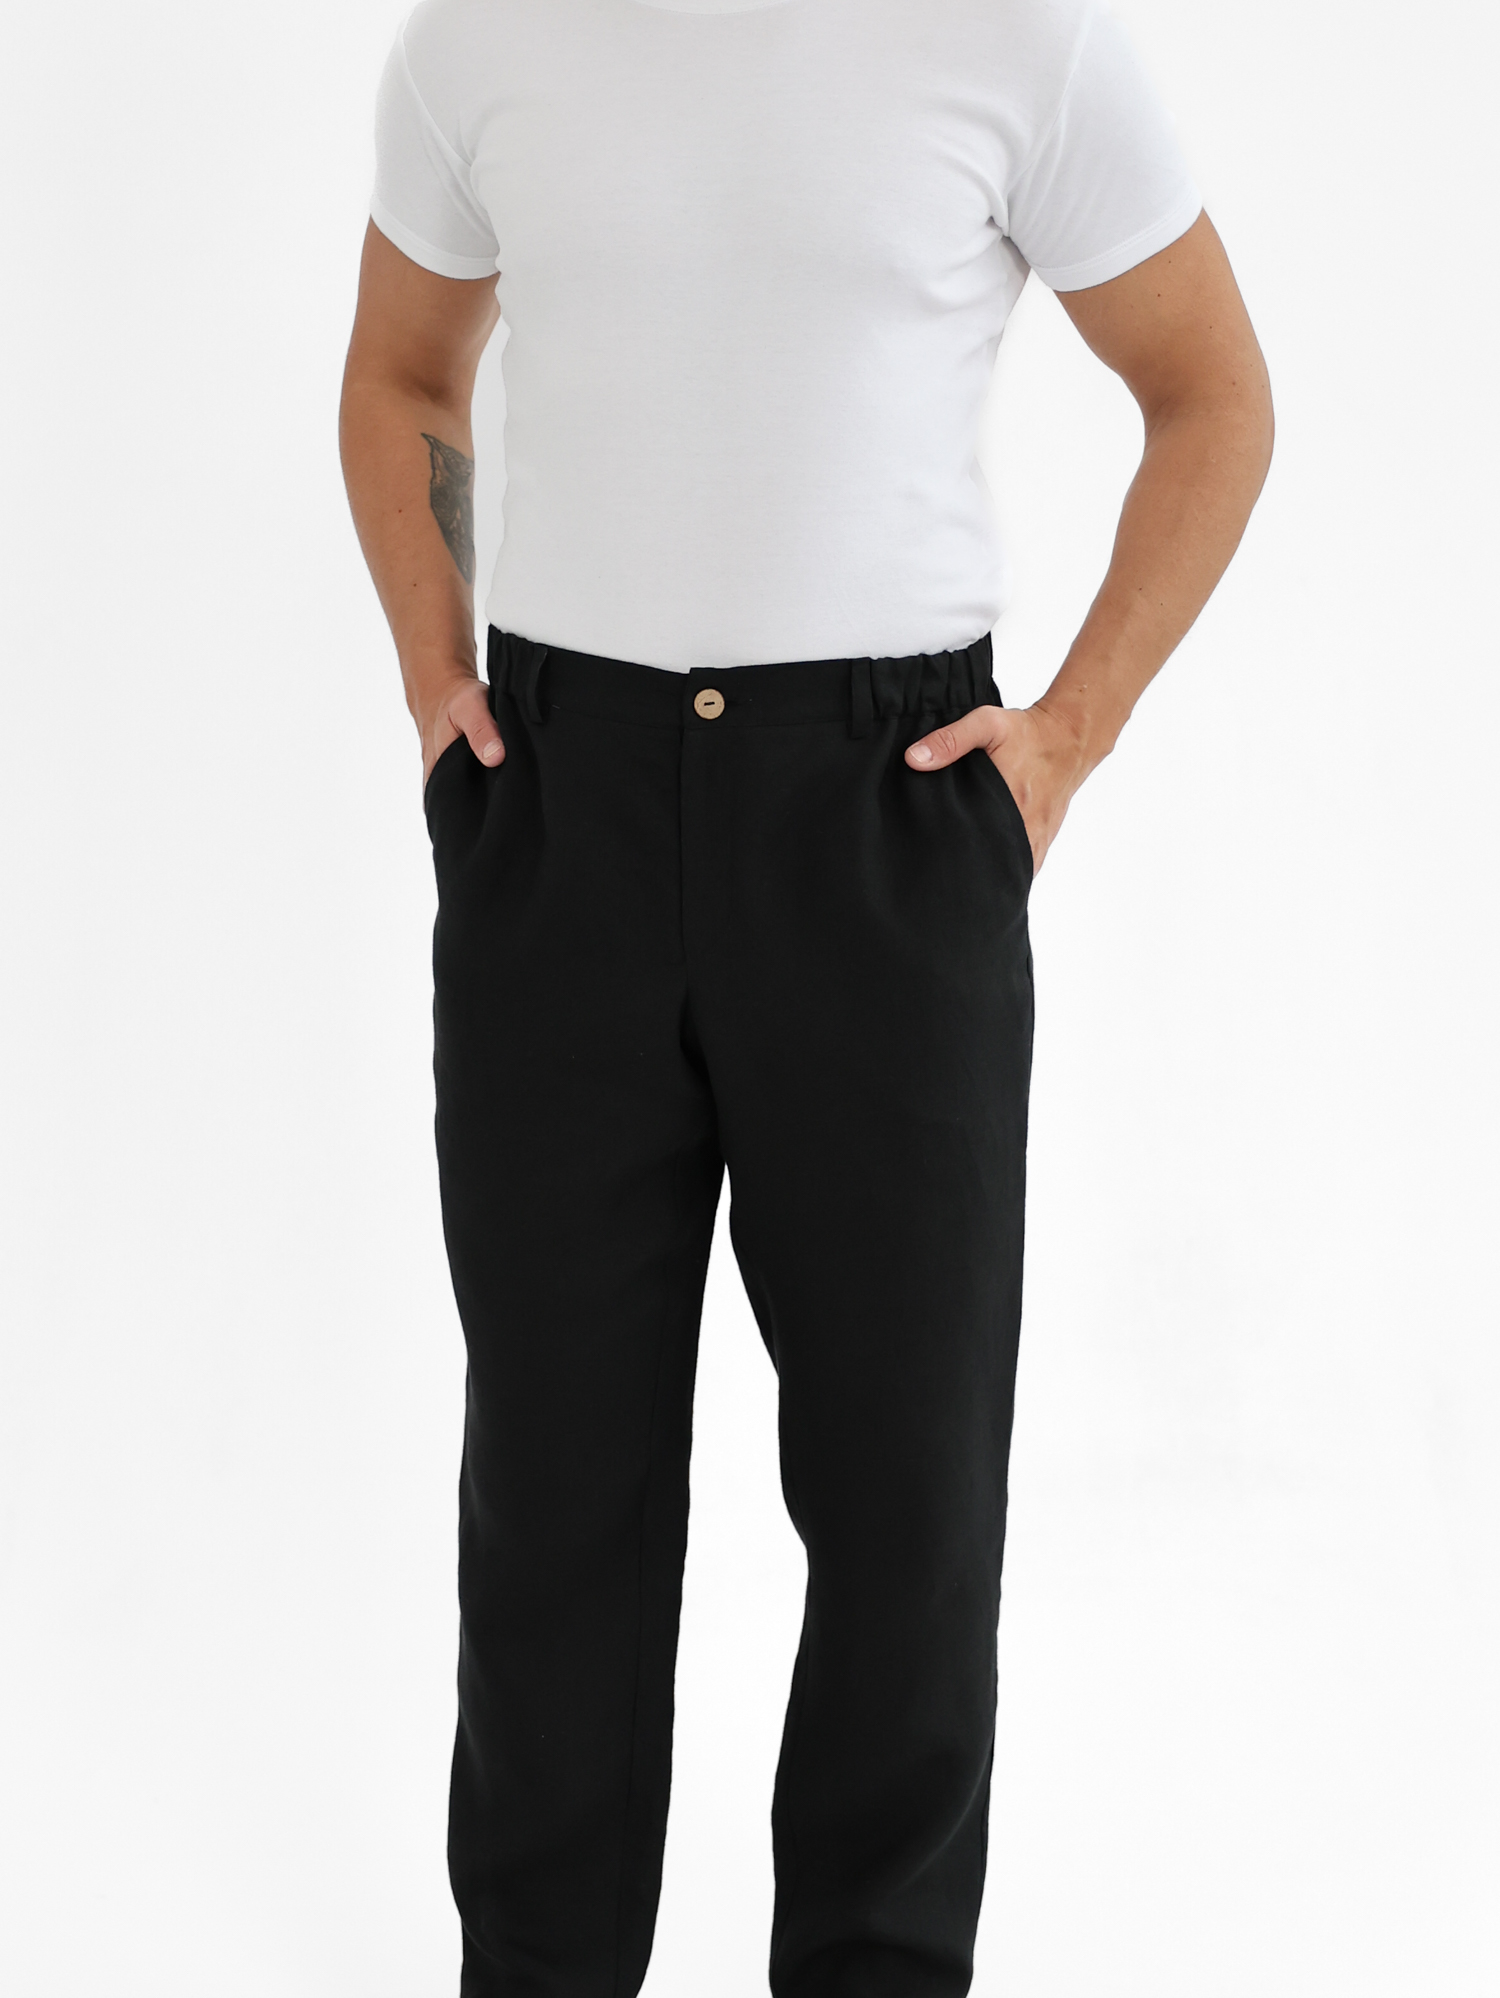 Men's black linen trousers